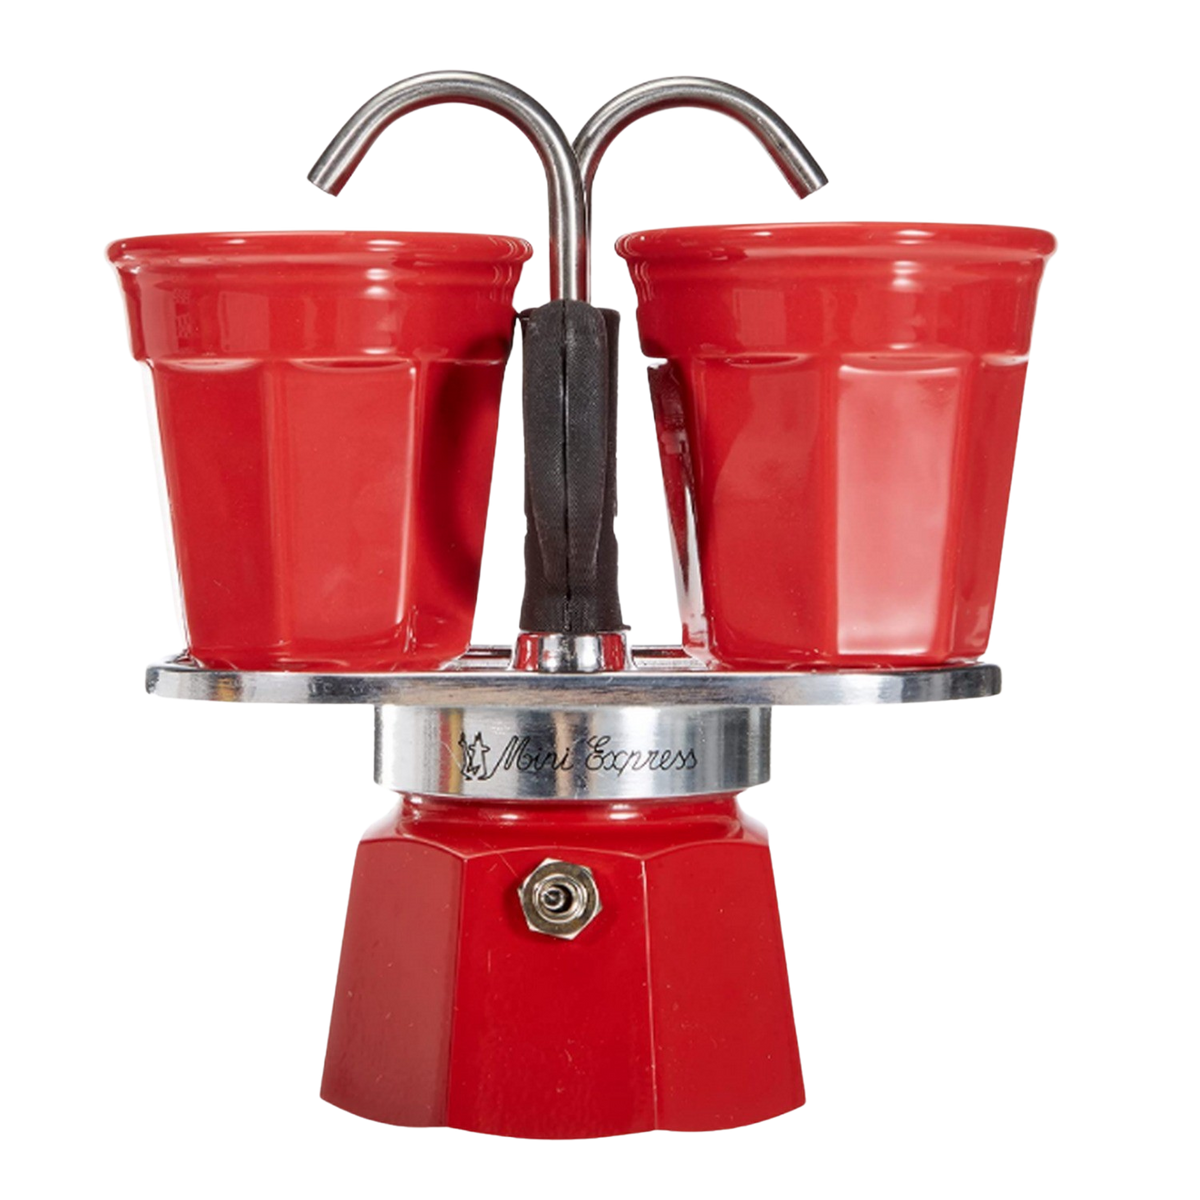 2 2TZ RED Tassen Mini Set Rot Espressokocher R BIALETTI für